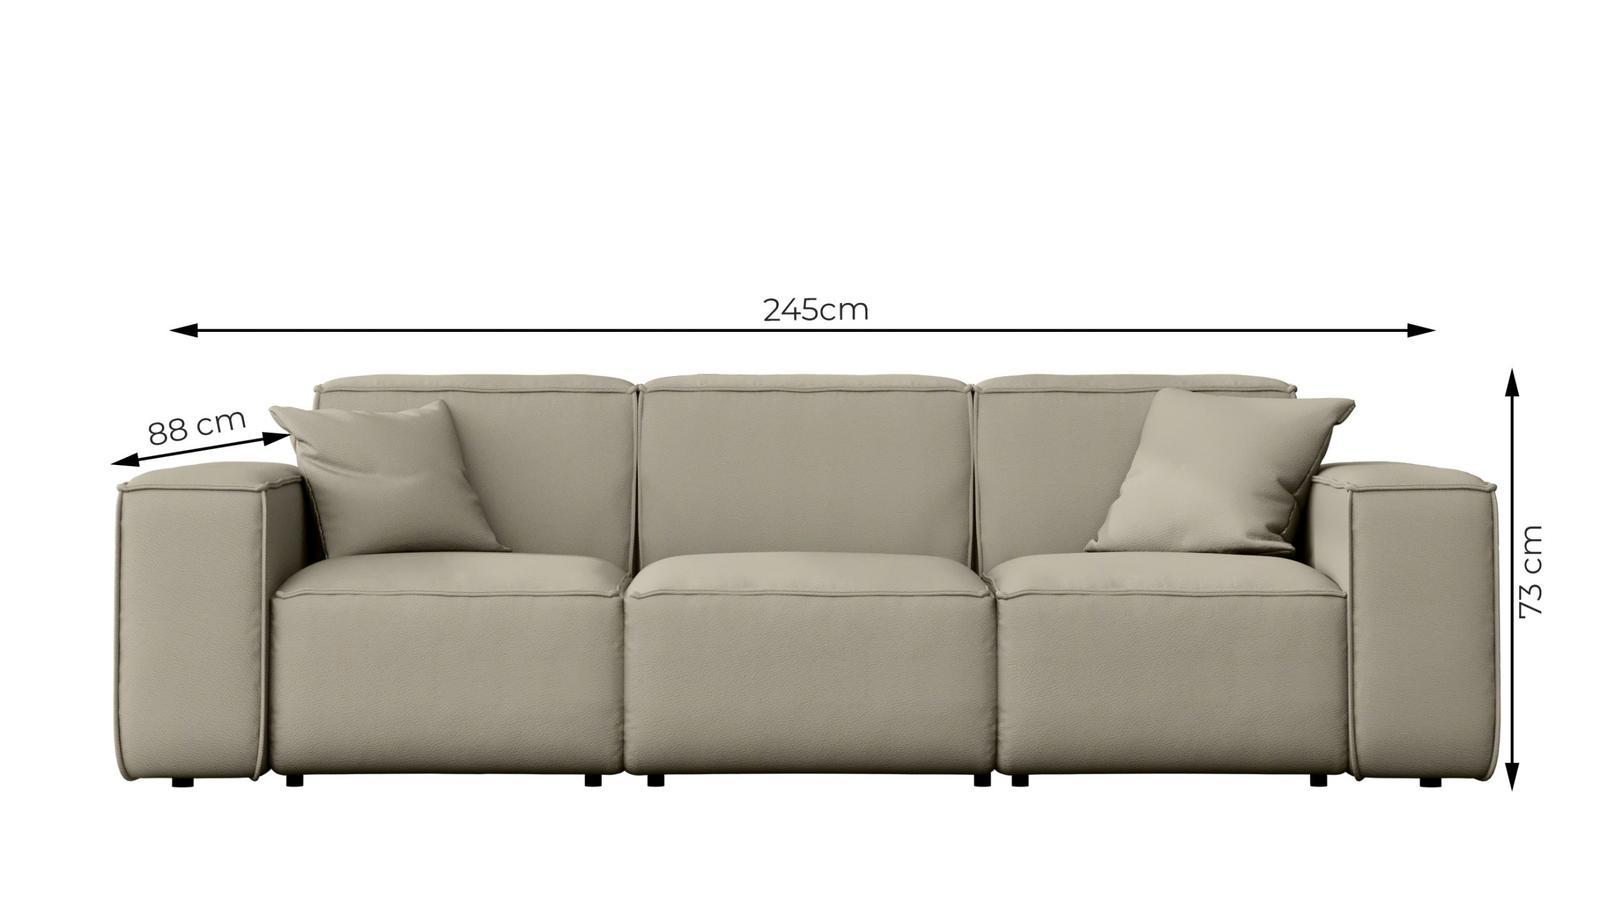 Sofa ogrodowa MALIBU 245x103x88 cm wodoodporna UV 3-os + 2 poduszki do ogrodu czarna 2 Full Screen